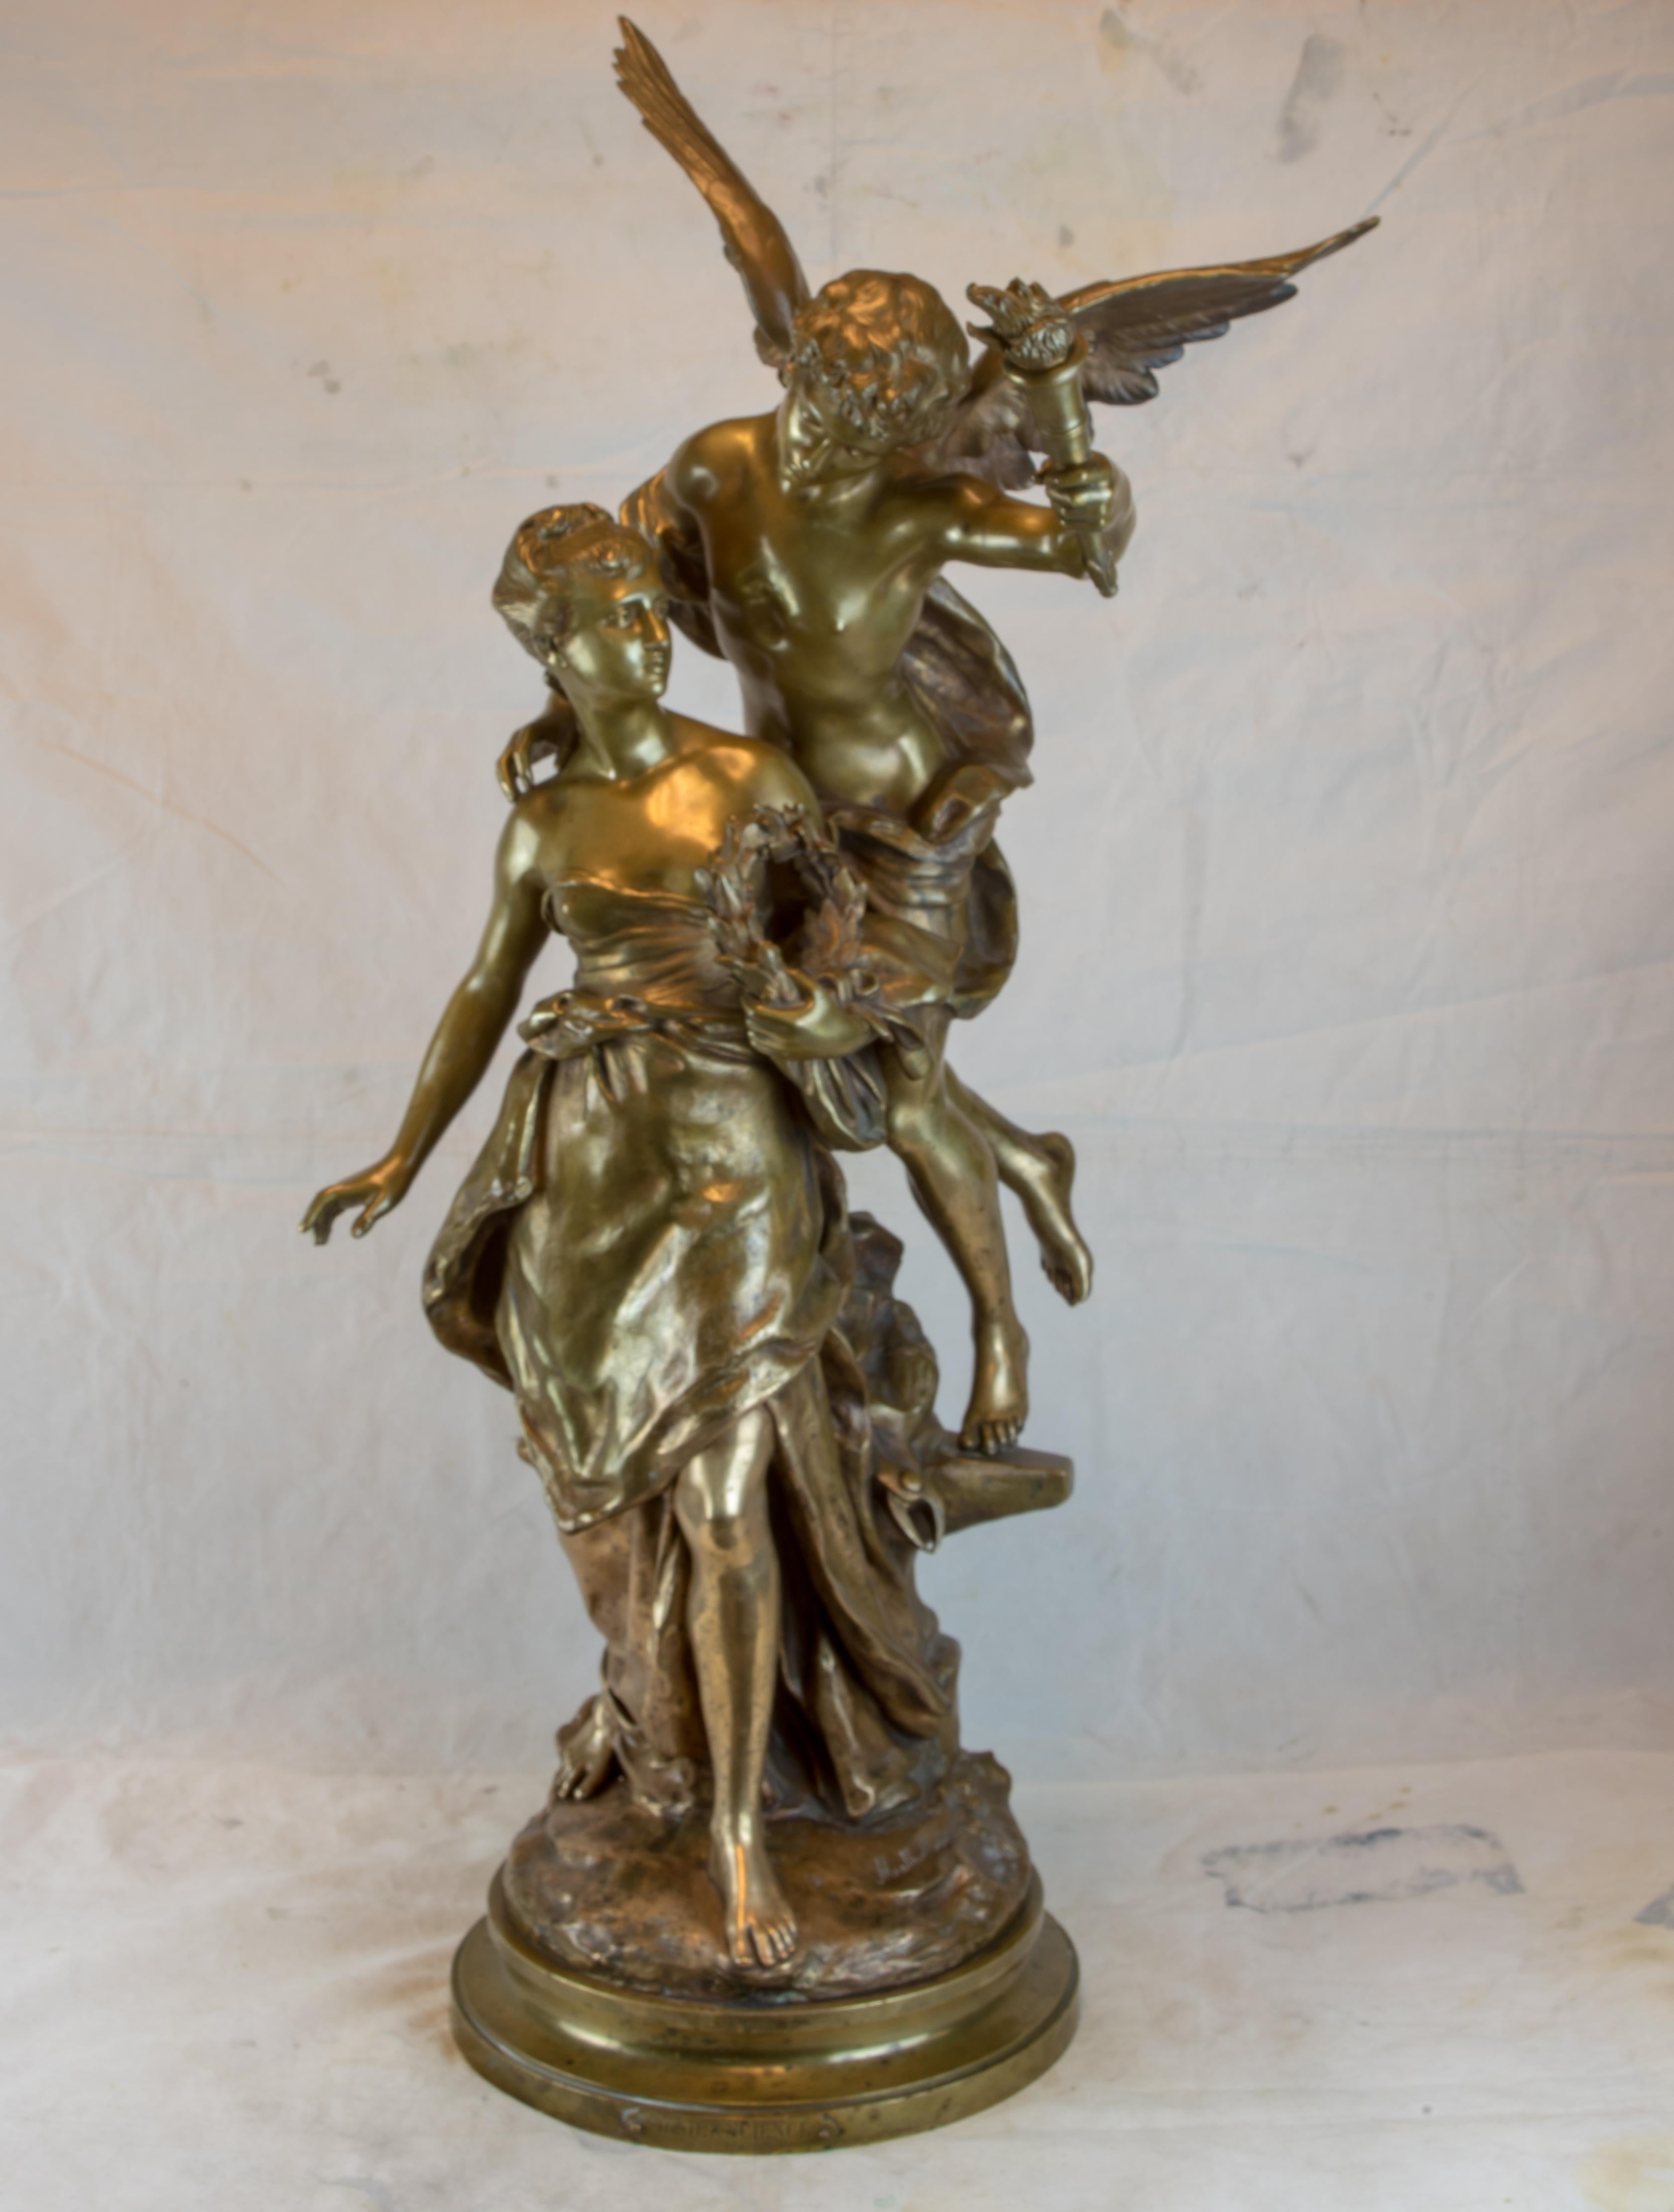 Groupement en bronze d'un Génie et d'une Science, une femme guidée par un ange aux ailes déployées par Mathurin Moreau, sculpteur français célèbre et décoré dont les talents se sont révélés les plus fructueux dans la présentation et la réalisation